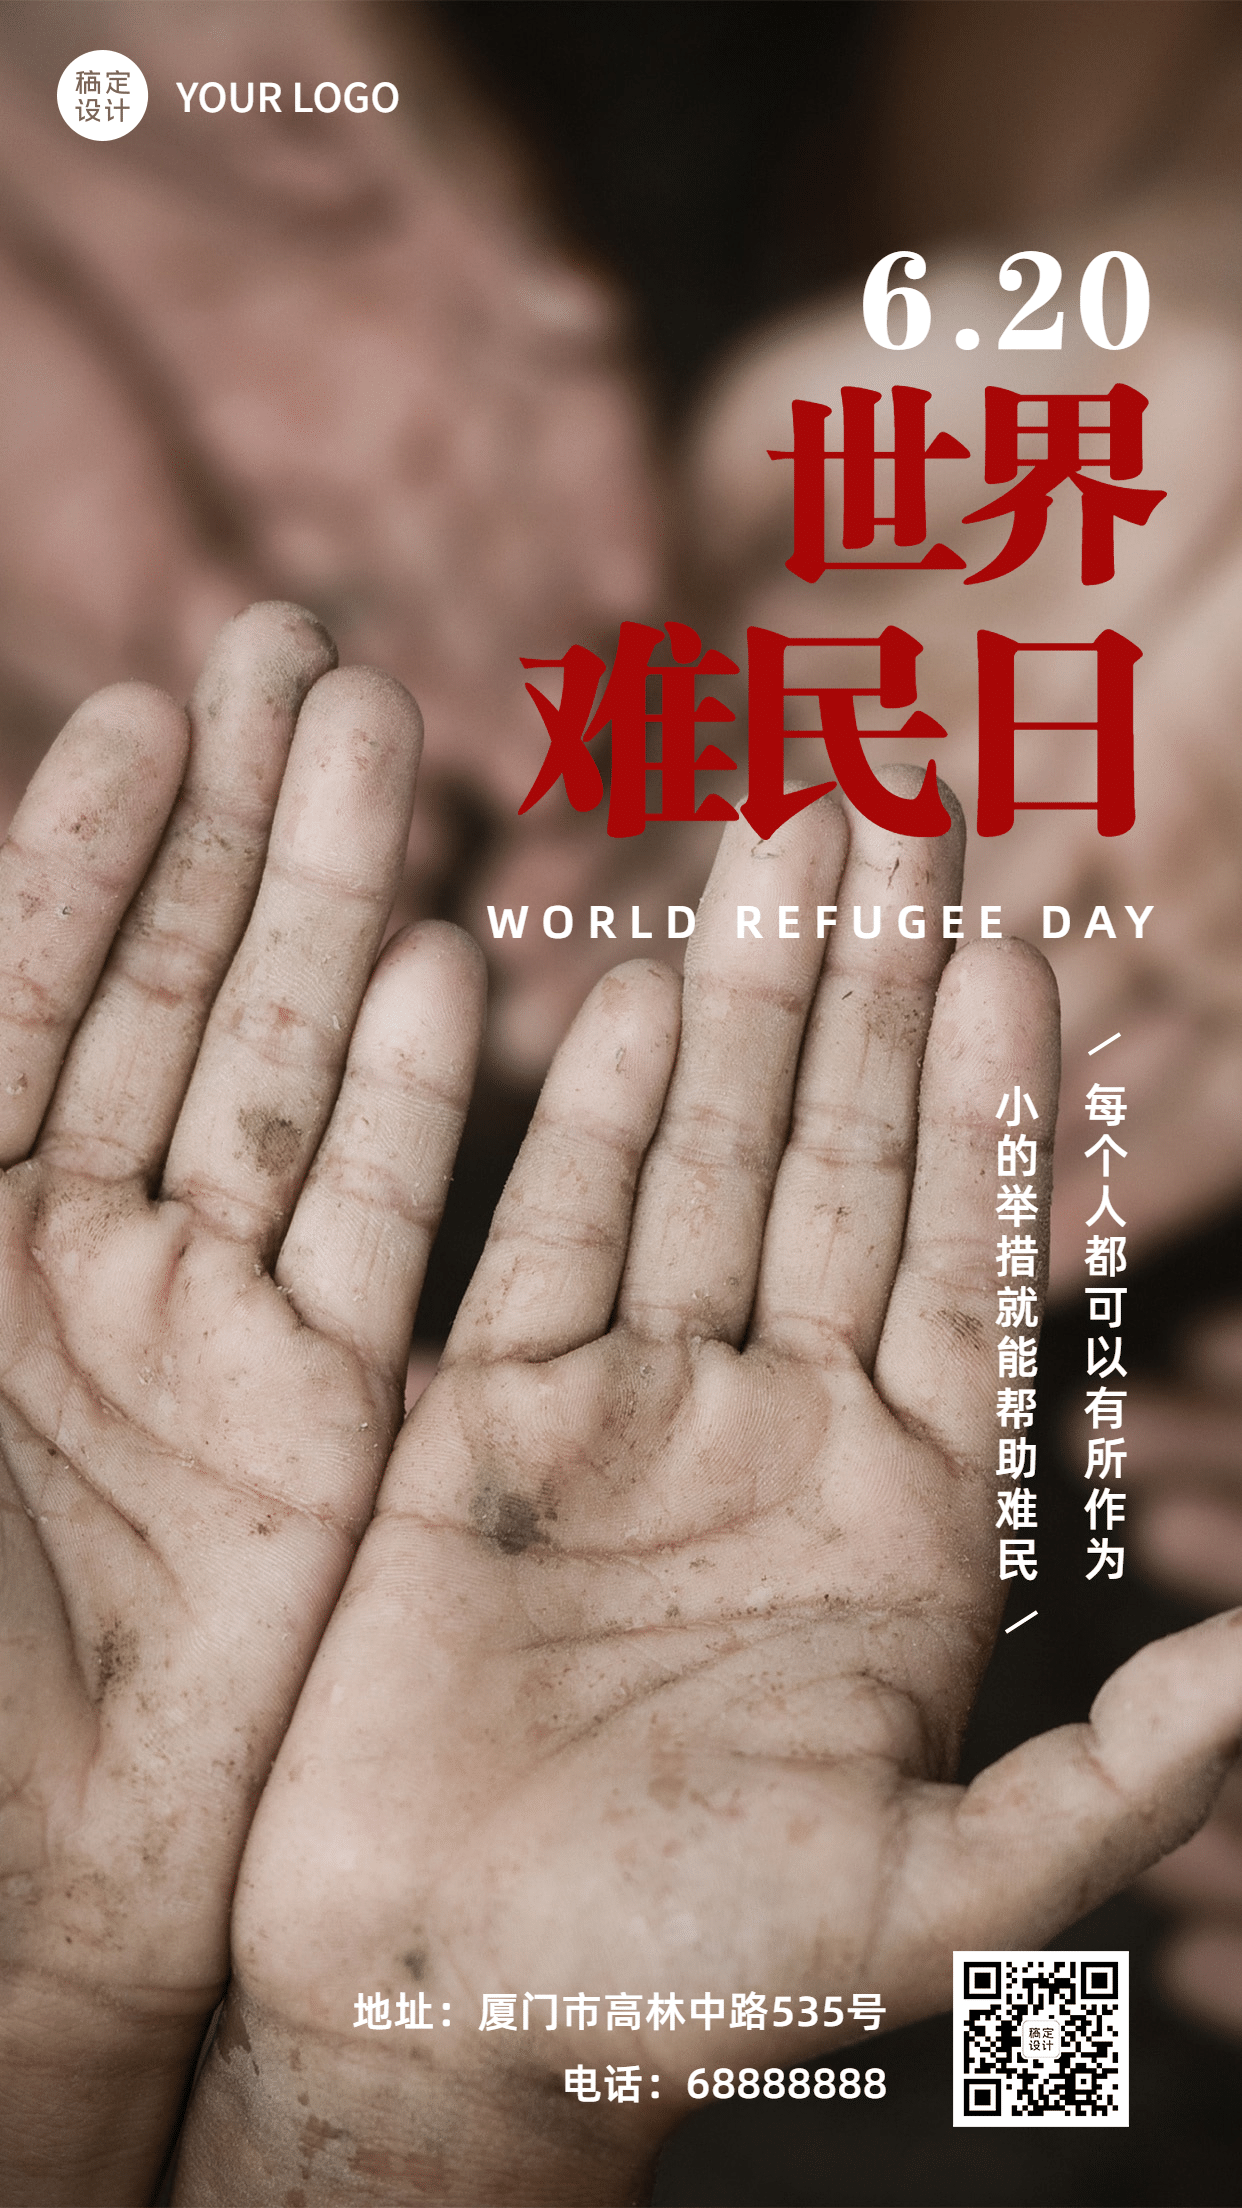 世界难民日爱心救助公益宣传实景手机海报